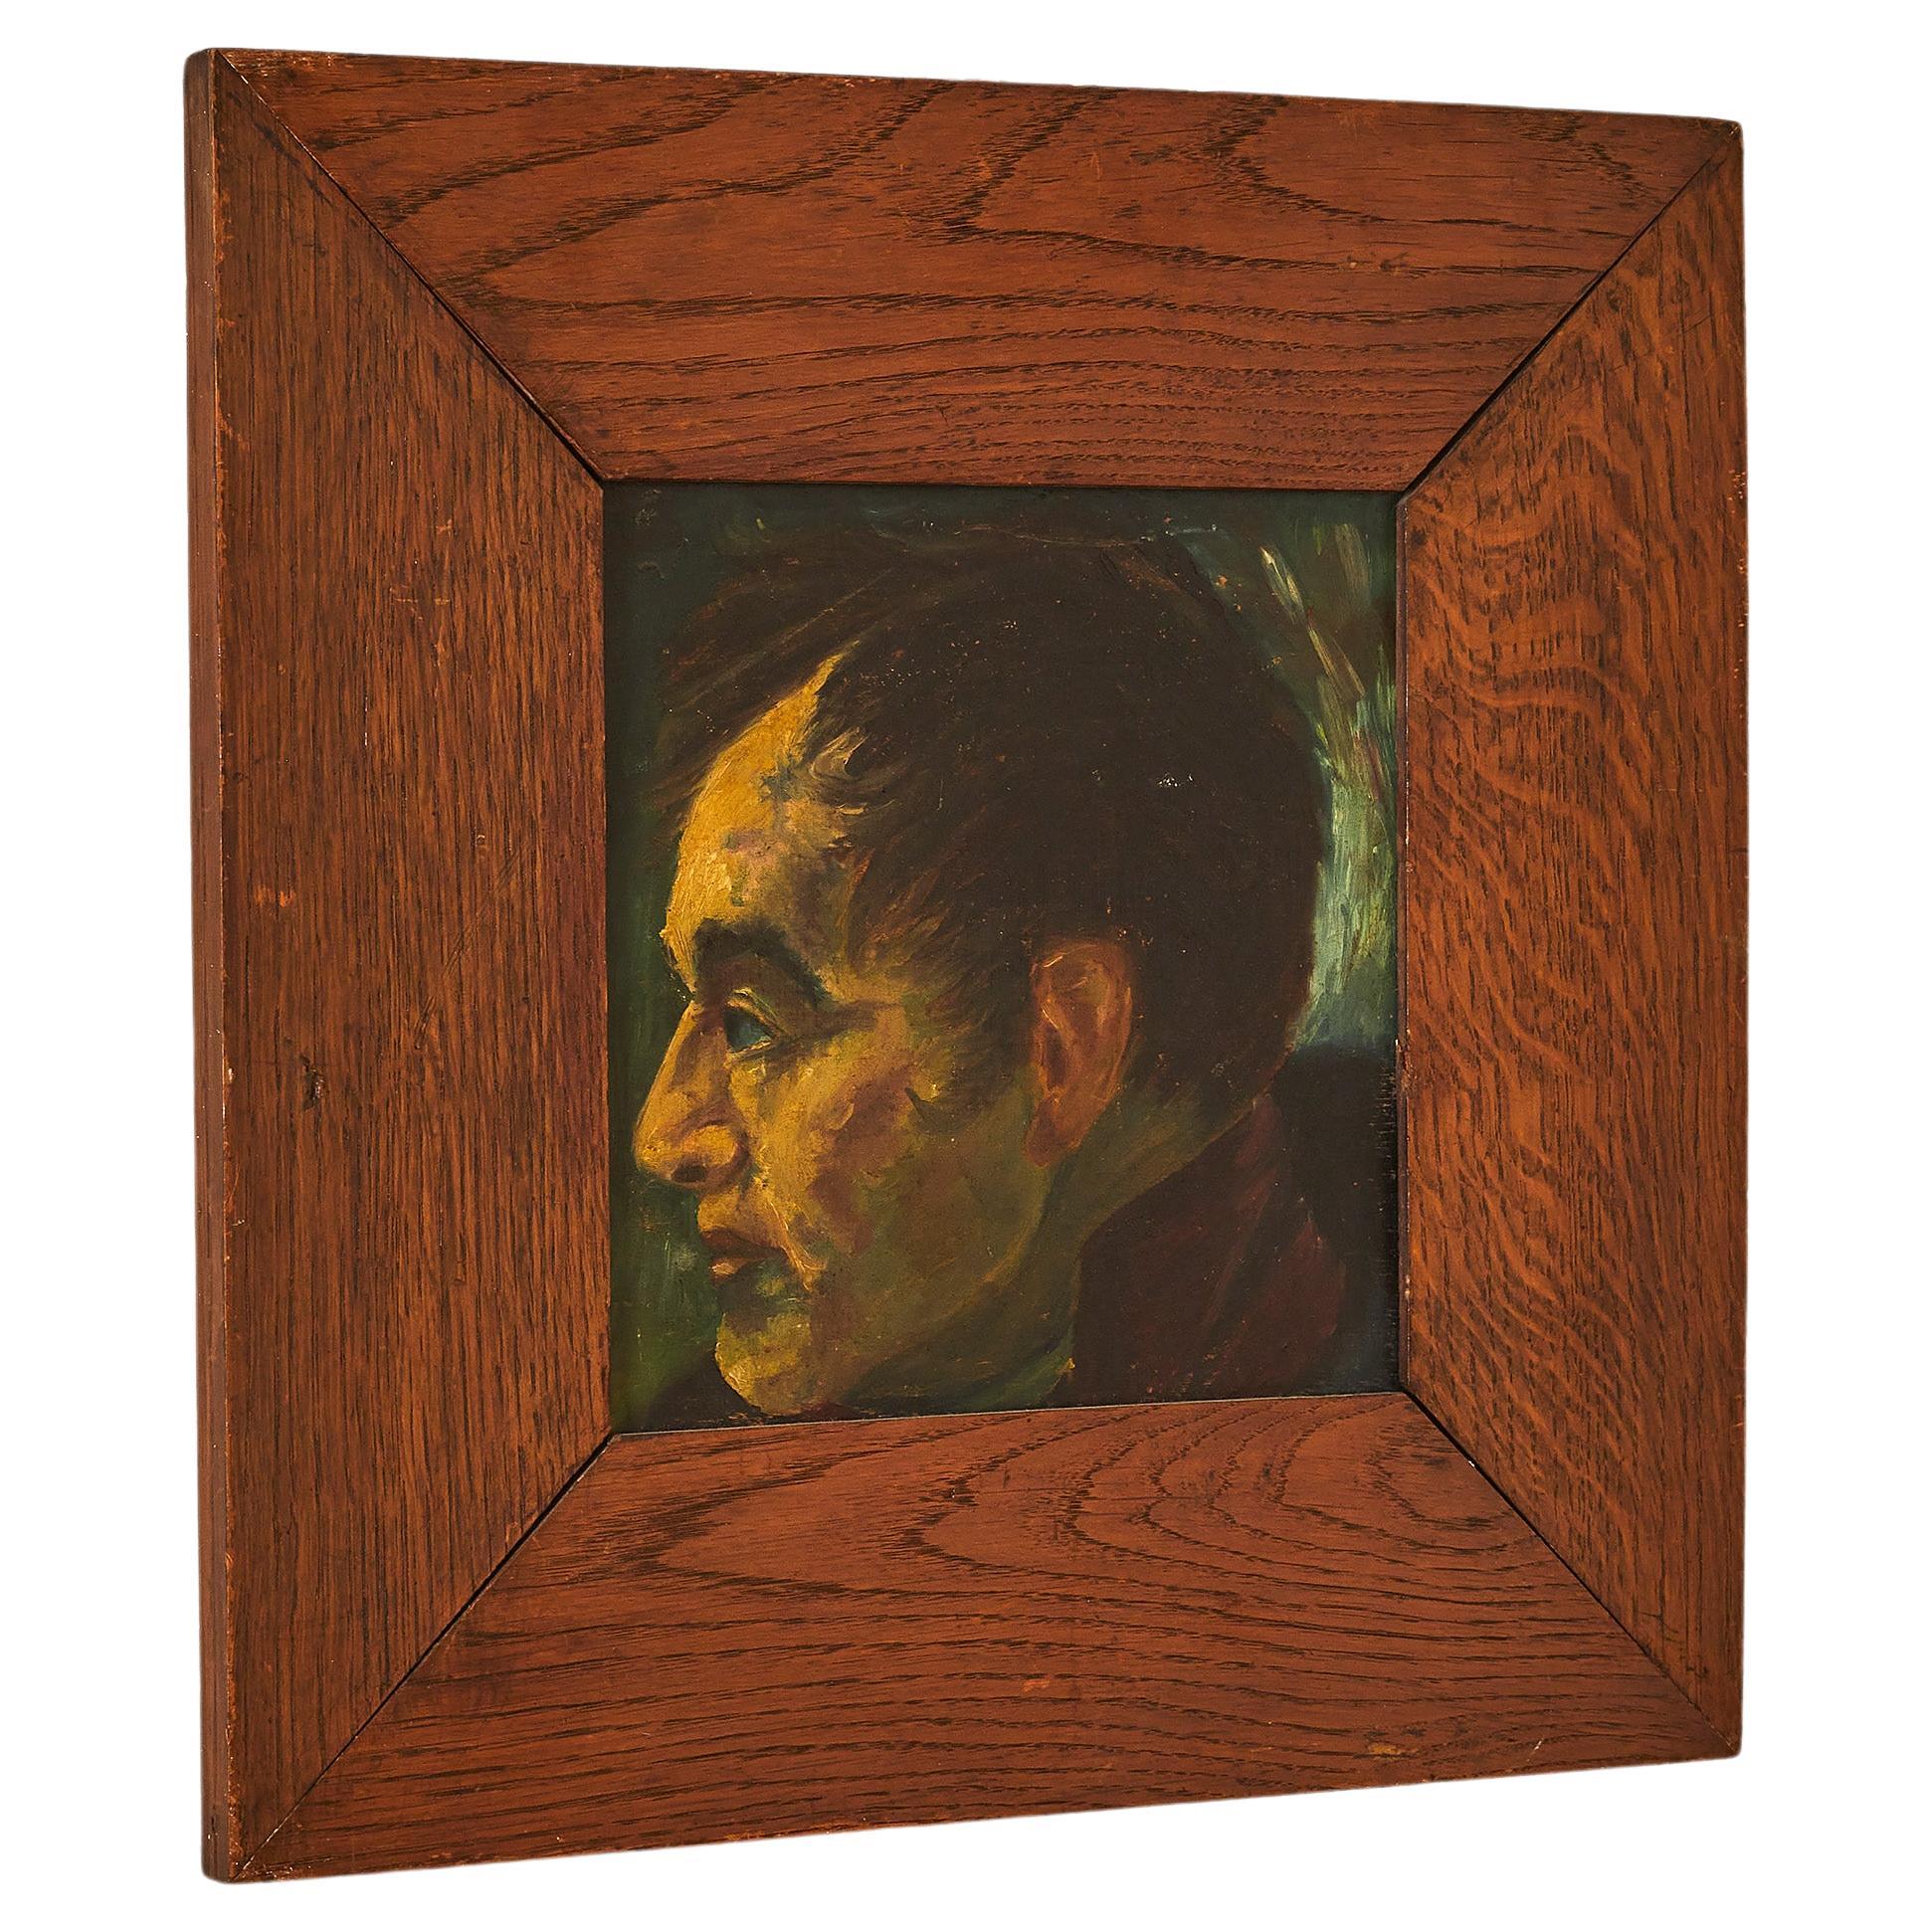 Italian Portrait in Wooden Frame For Sale